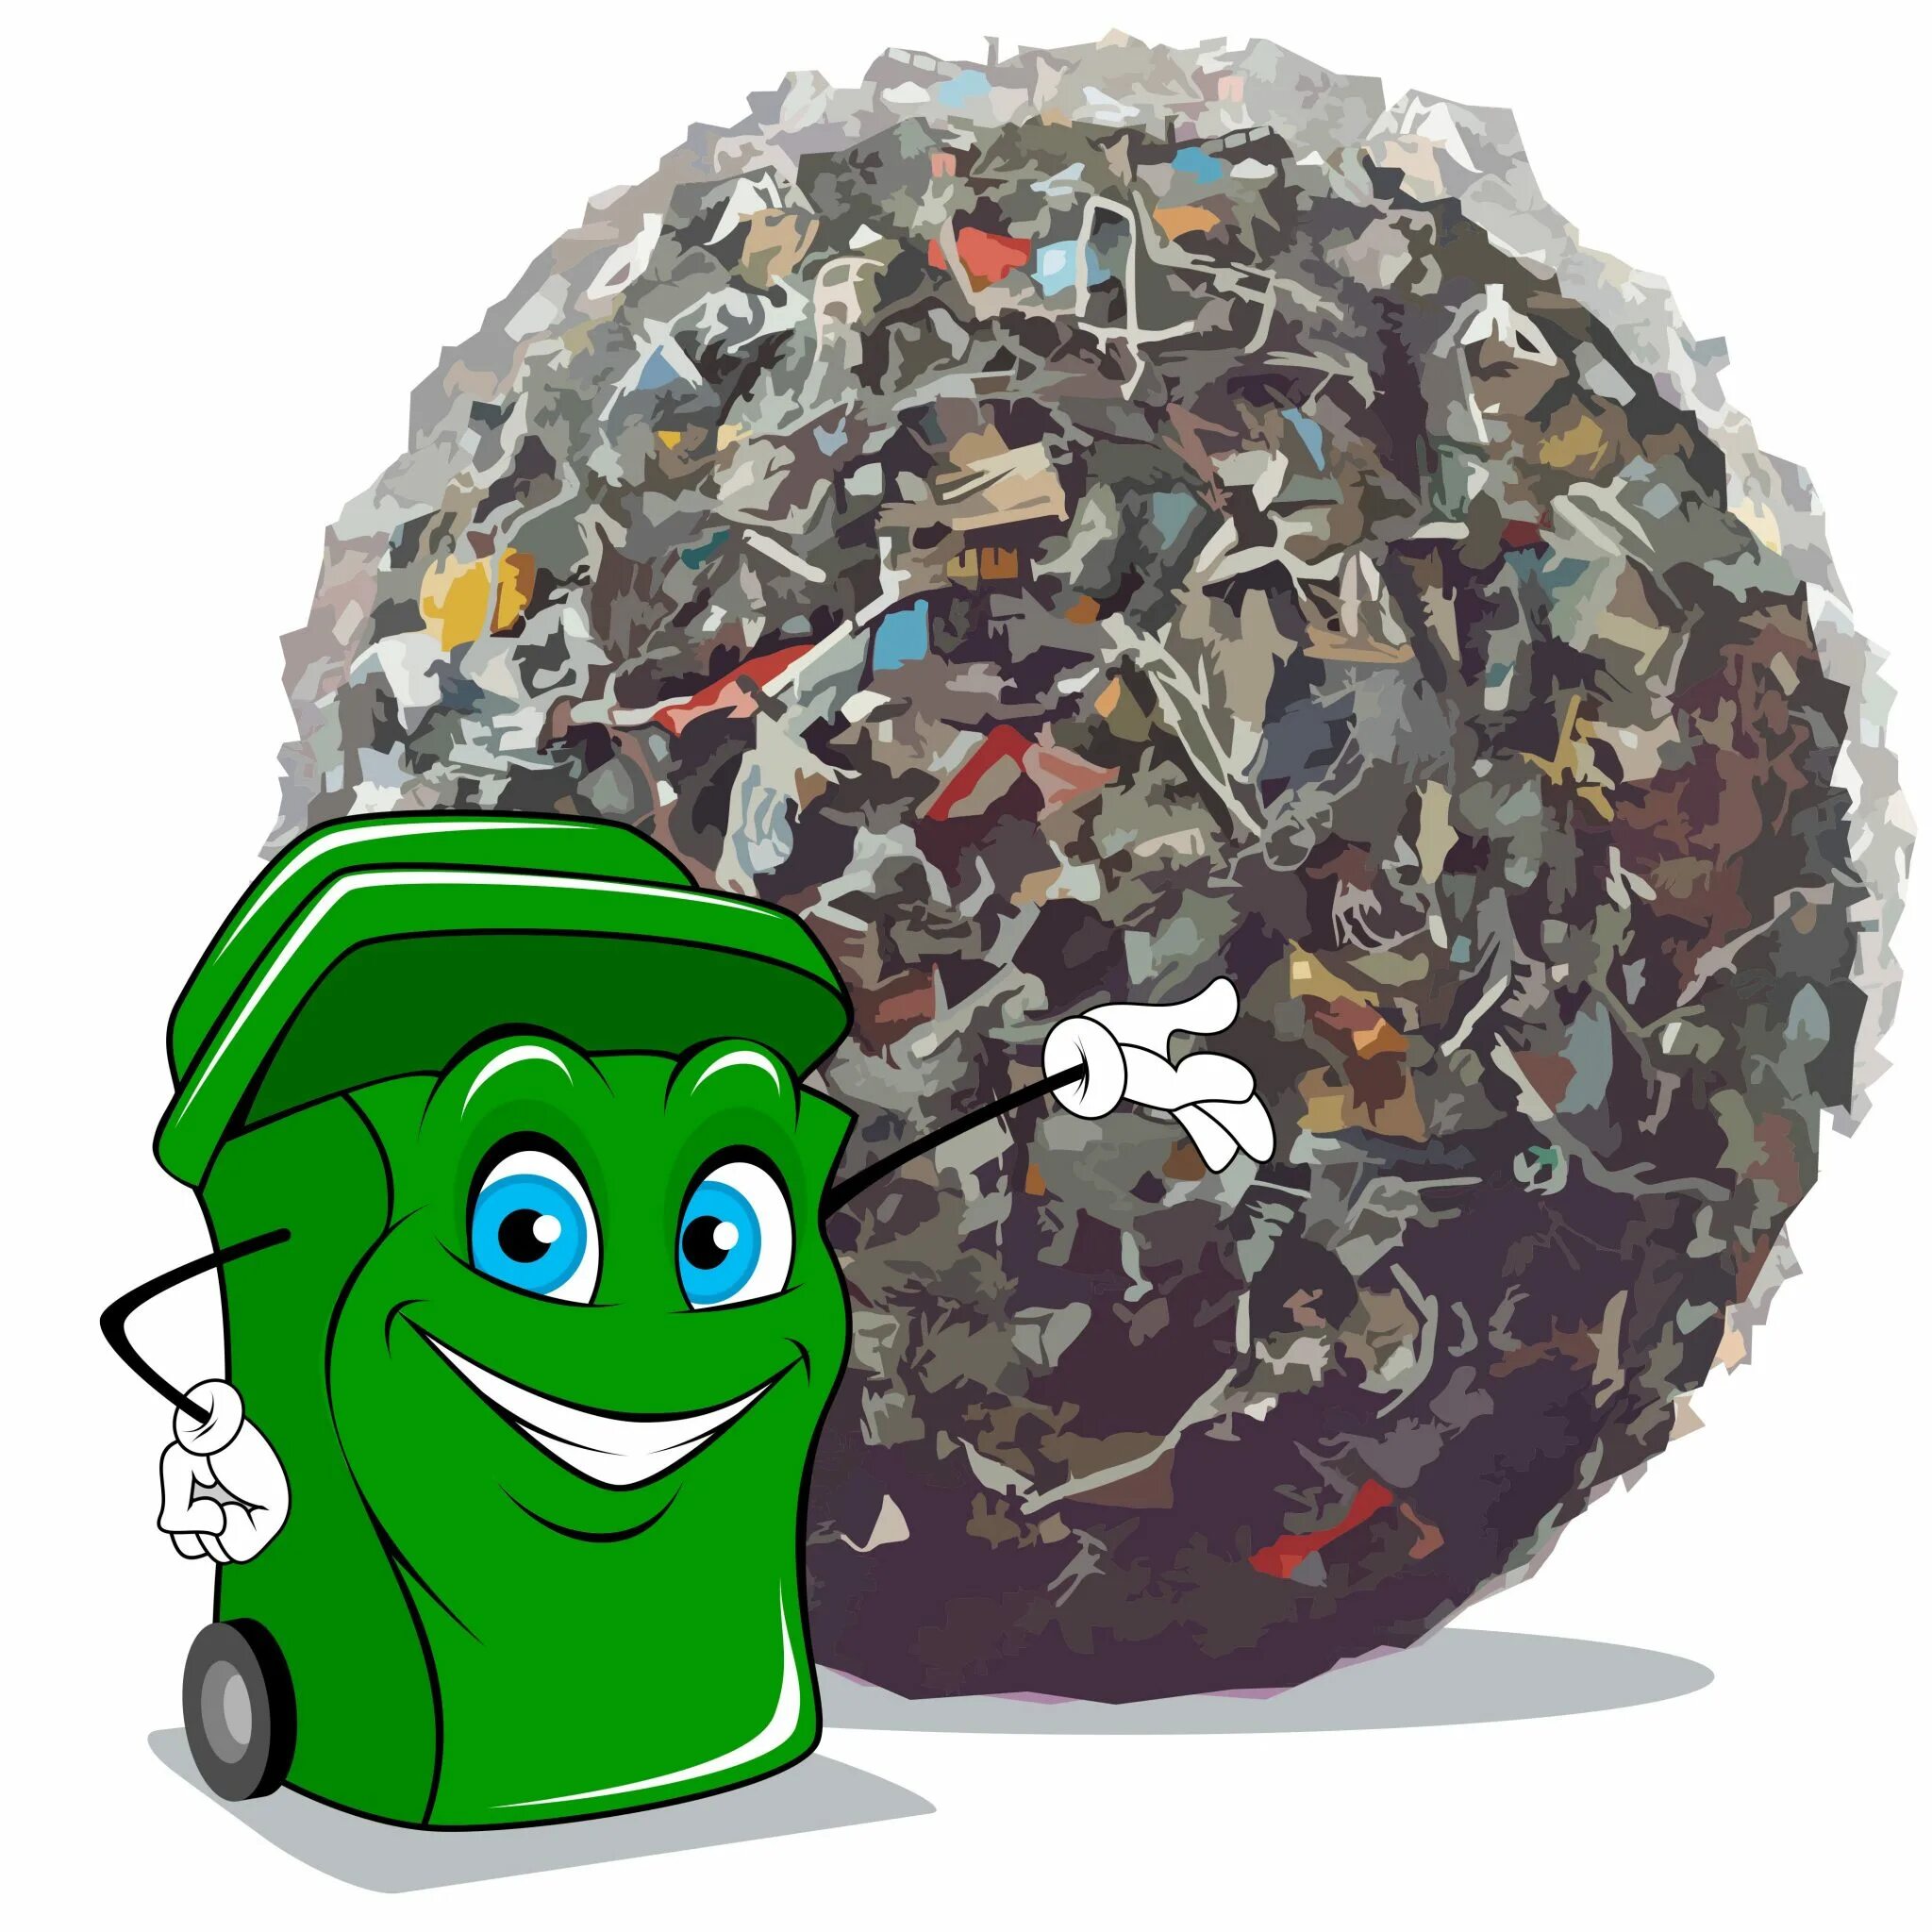 Группа бытовых отходов. Утилизация бытовых отходов.